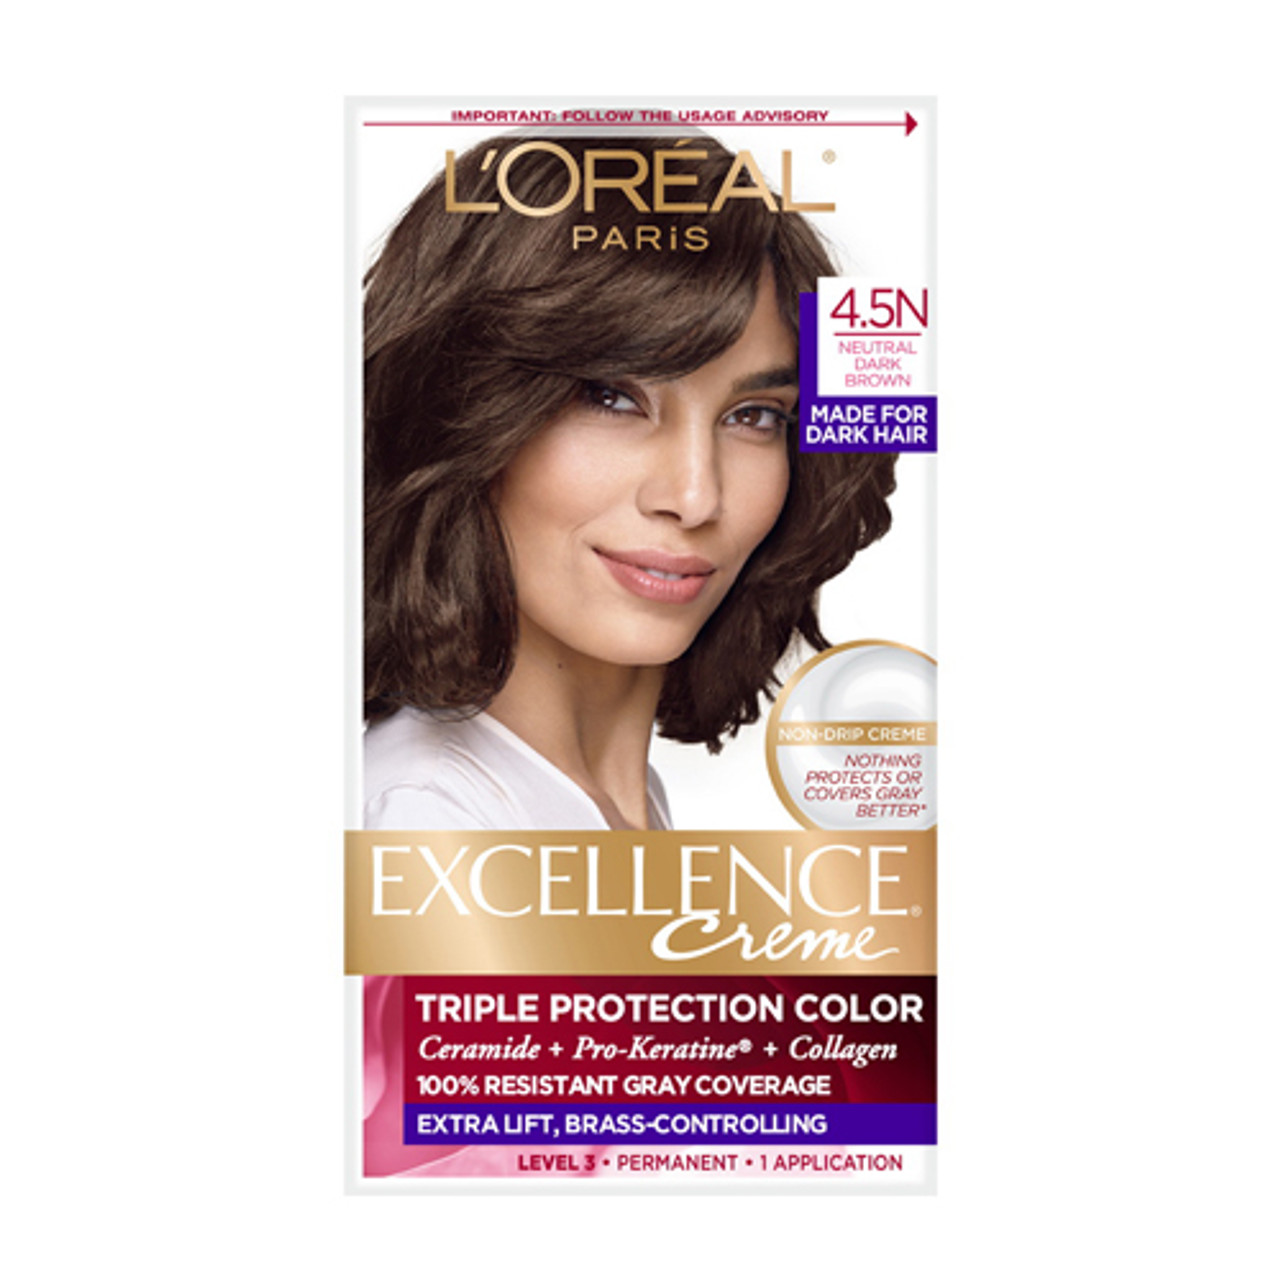 LOreal Paris Excellence Creme Permanent Triple Protection Hair Color ...